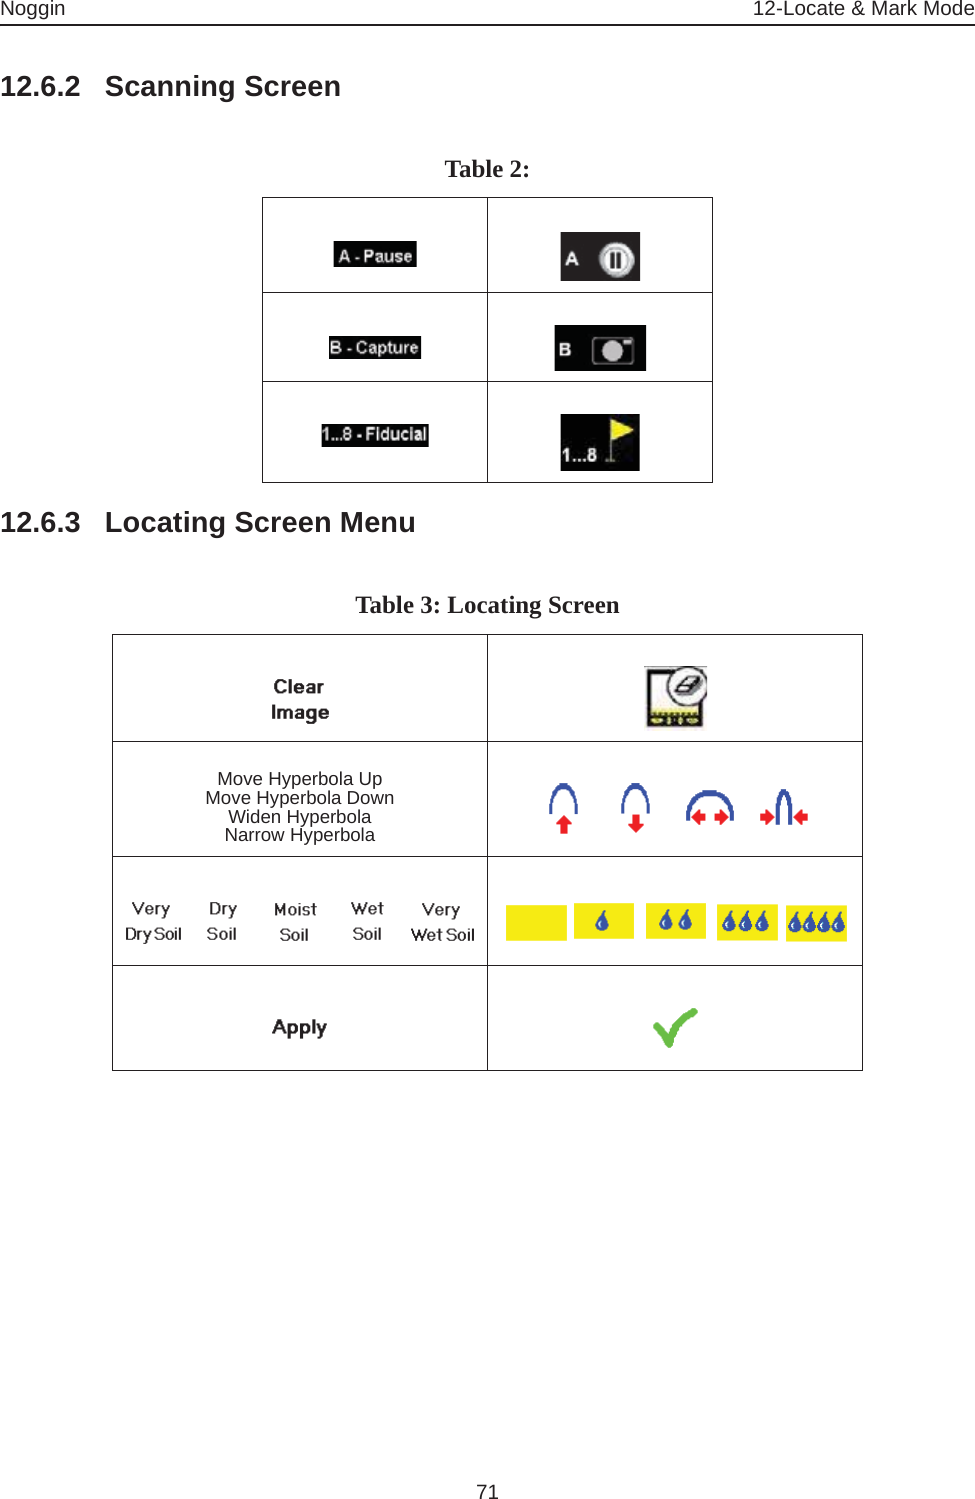 Noggin 12-Locate &amp; Mark Mode7112.6.2 Scanning Screen12.6.3 Locating Screen MenuTable 2: Table 3: Locating Screen Move Hyperbola UpMove Hyperbola DownWiden HyperbolaNarrow Hyperbola